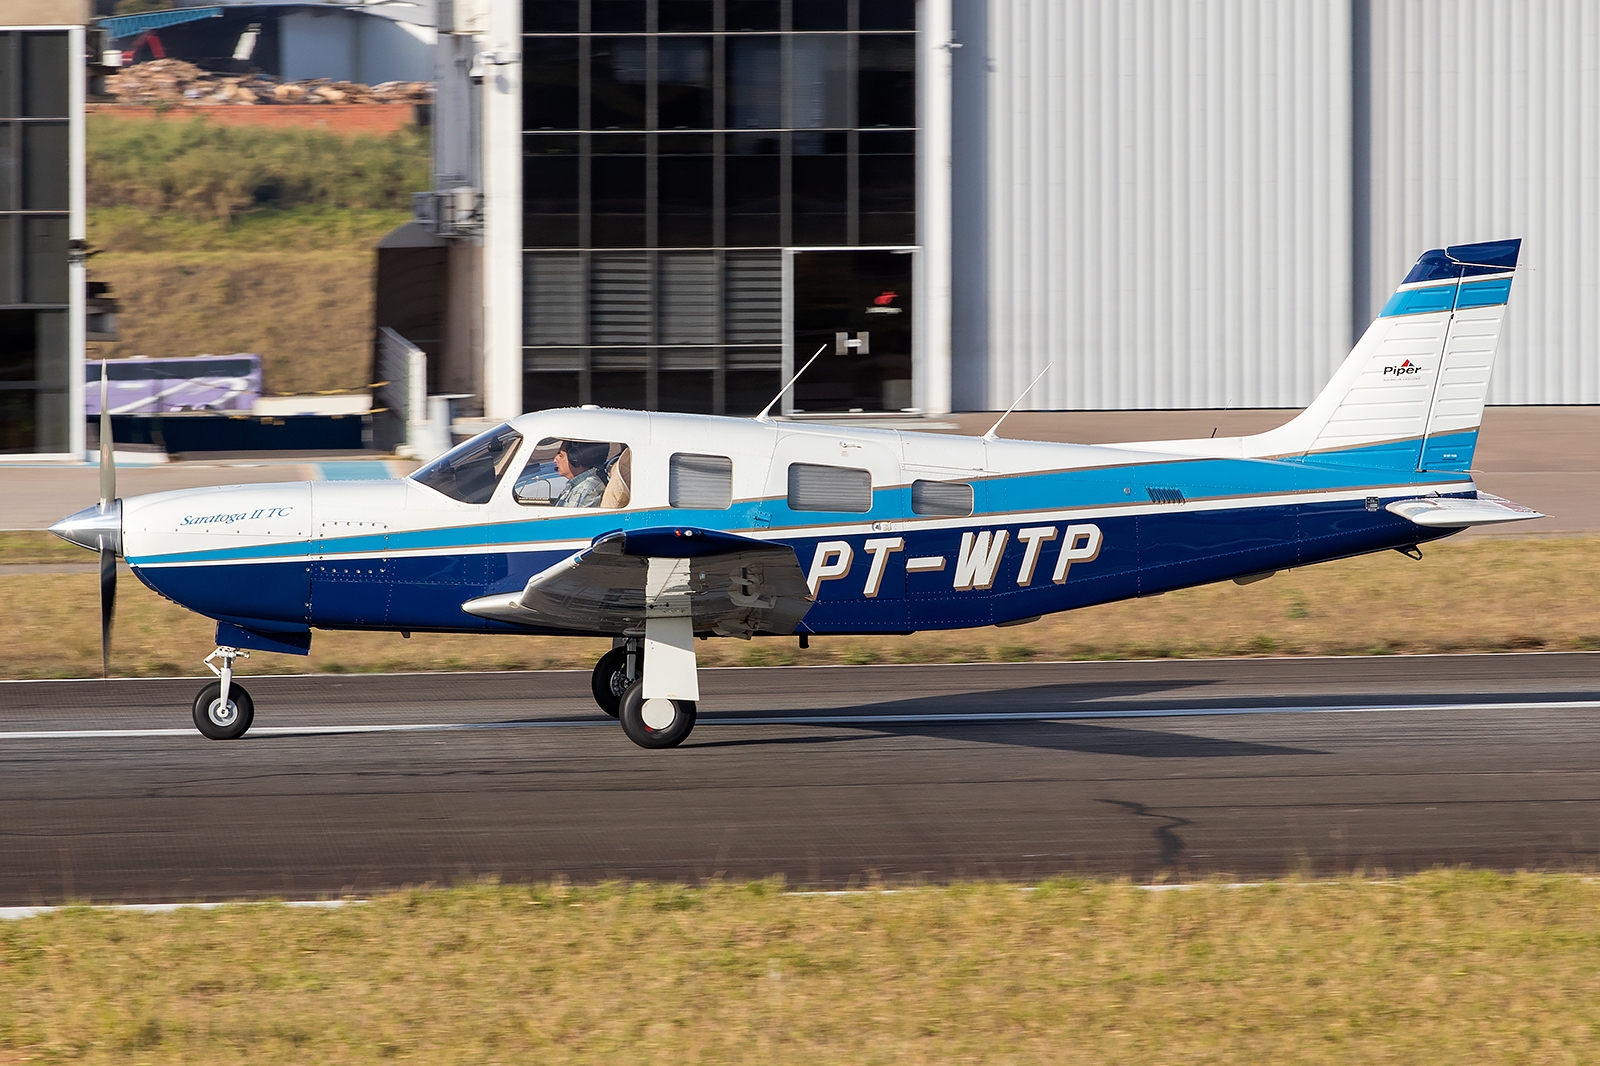 PT-WTP - Piper PA-32R-301T Saratoga II